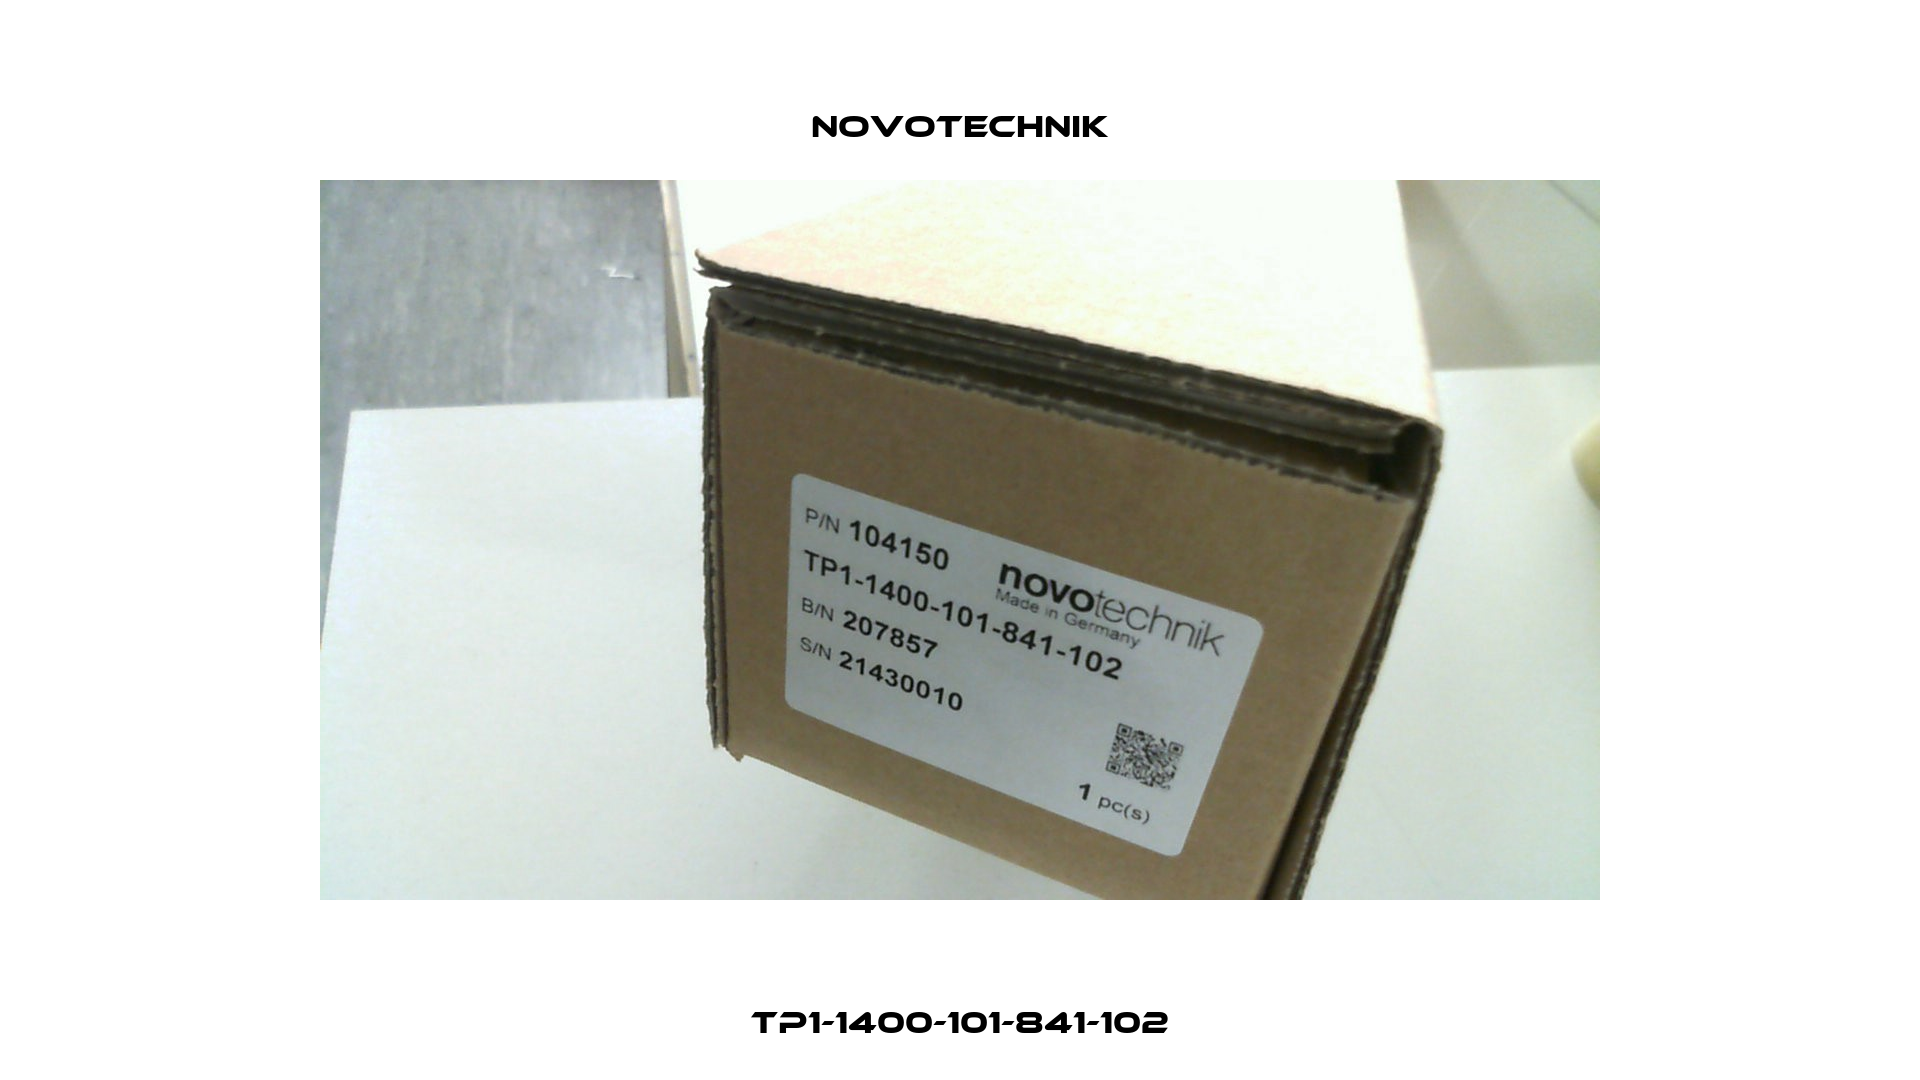 TP1-1400-101-841-102 Novotechnik